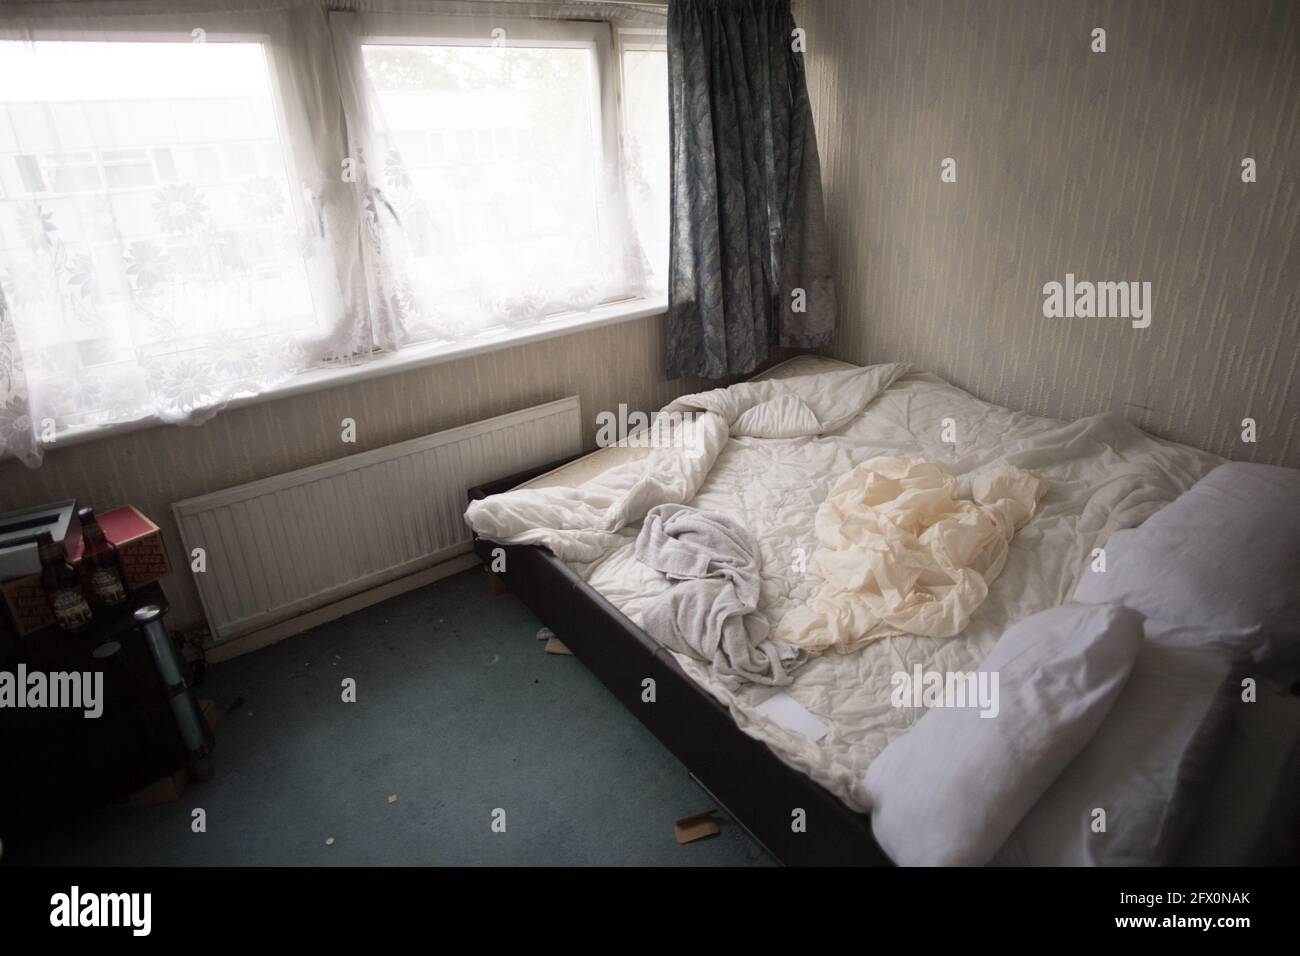 Asbest Isolierung von der Decke auf einem leeren Bauernhaus peeling  Stockfotografie - Alamy